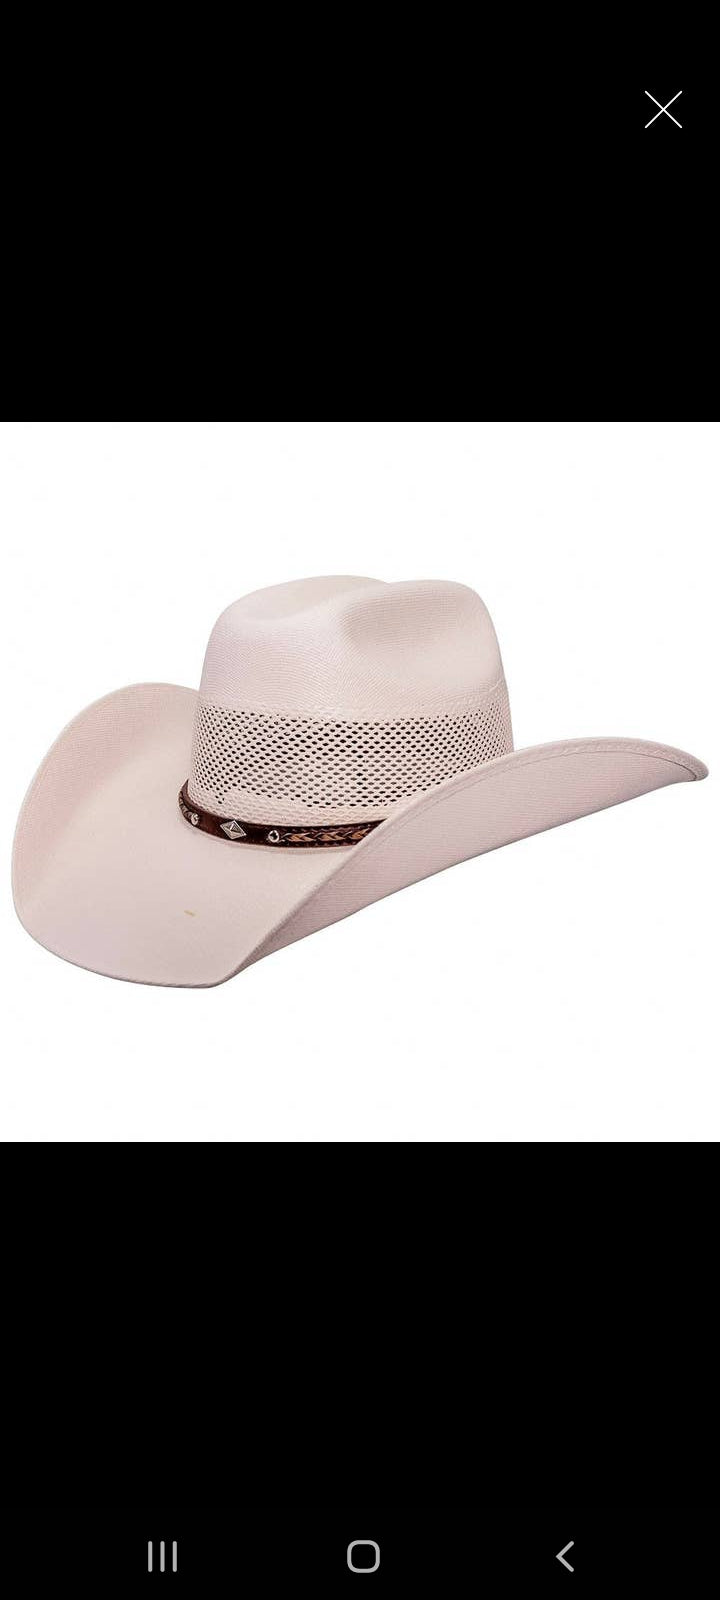 Austin Cowboy Hat - Our Best Seller